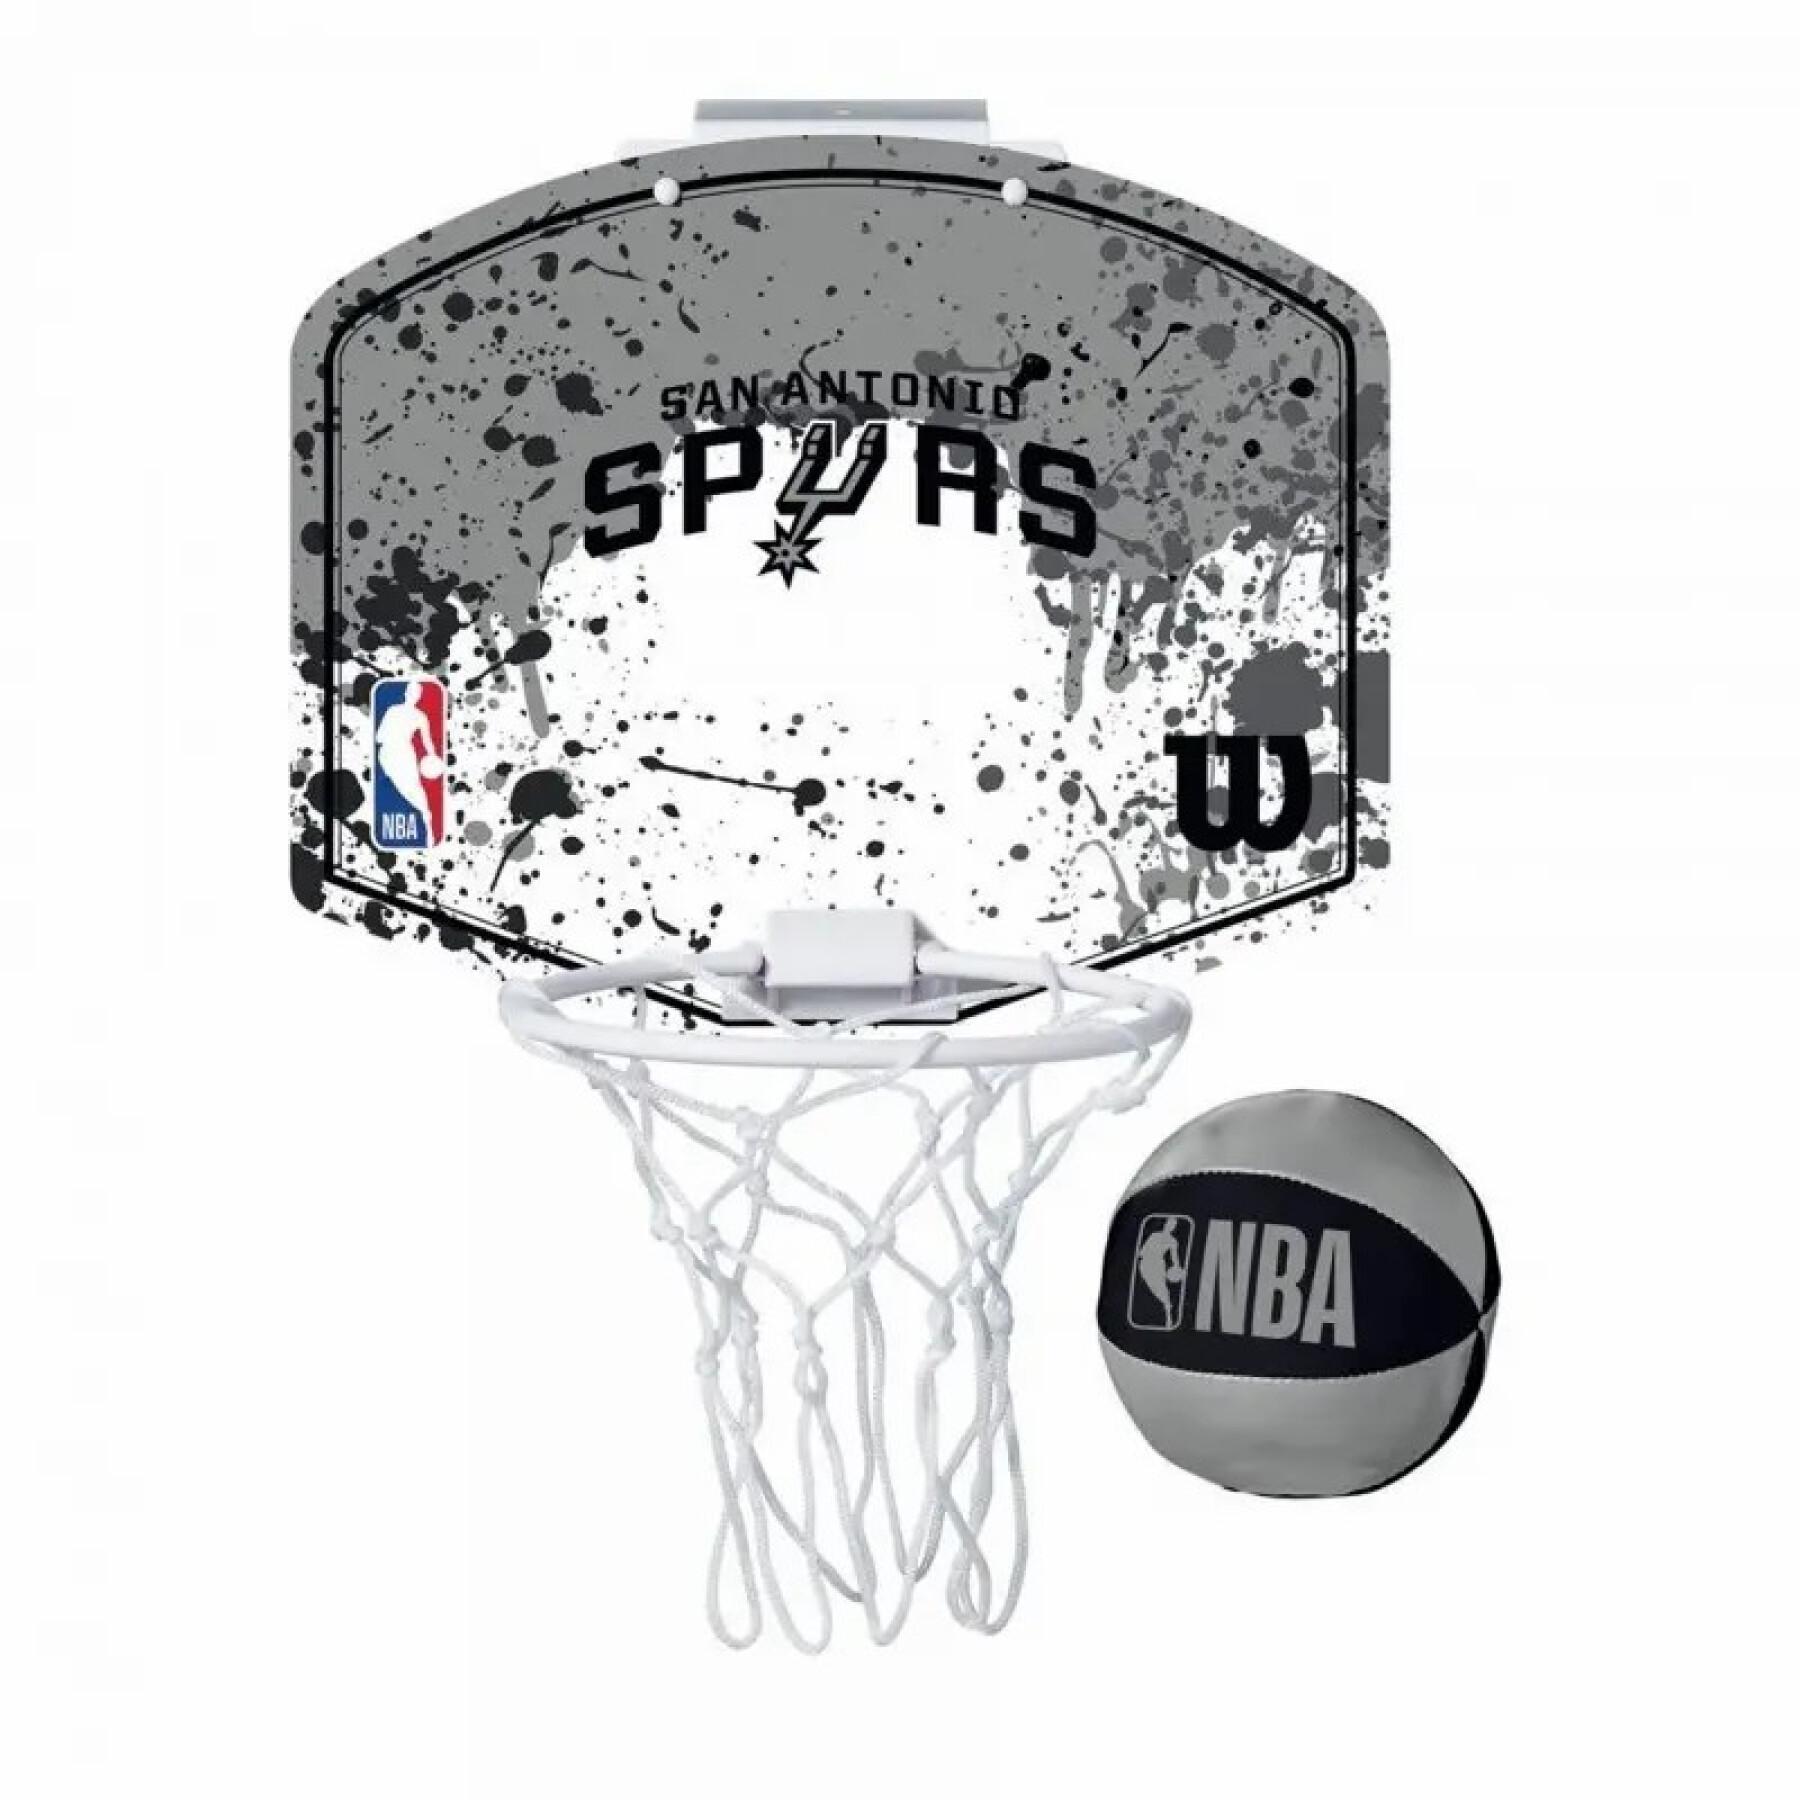 Mini basketbalhoepel San Antonio Spurs NBA Team